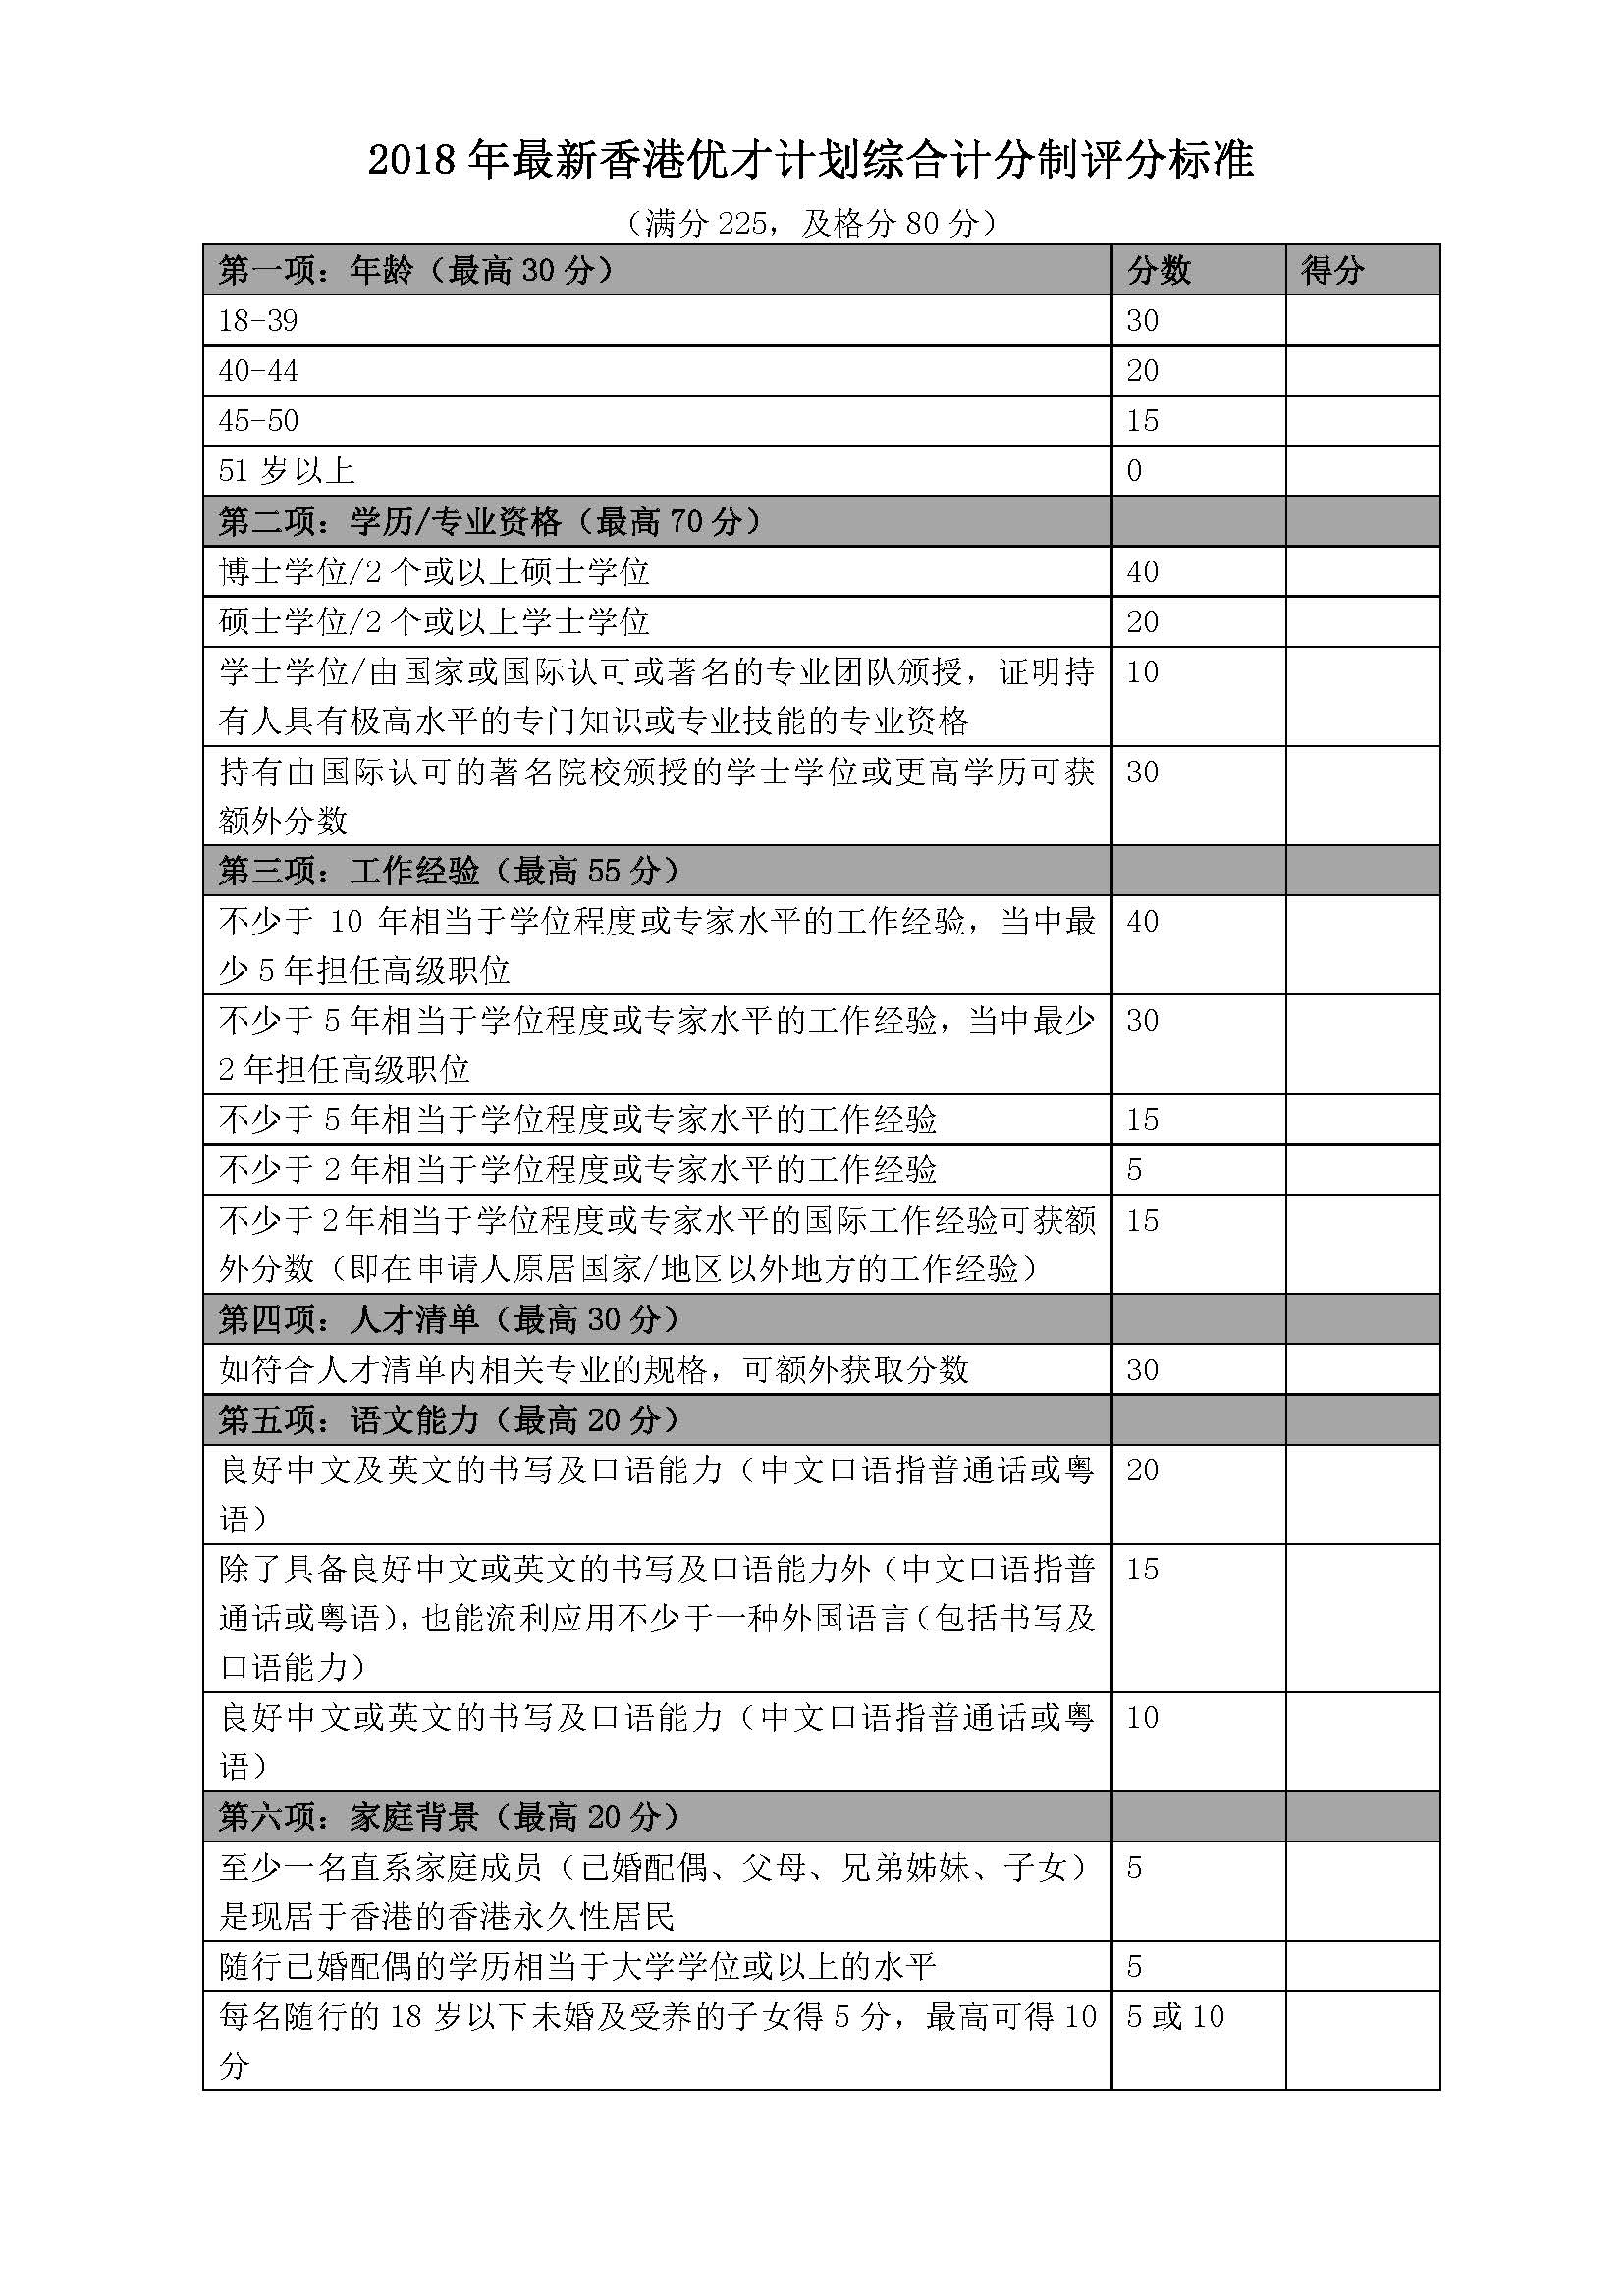 2018年最新香港优才计划综合计分制评分标准.jpg